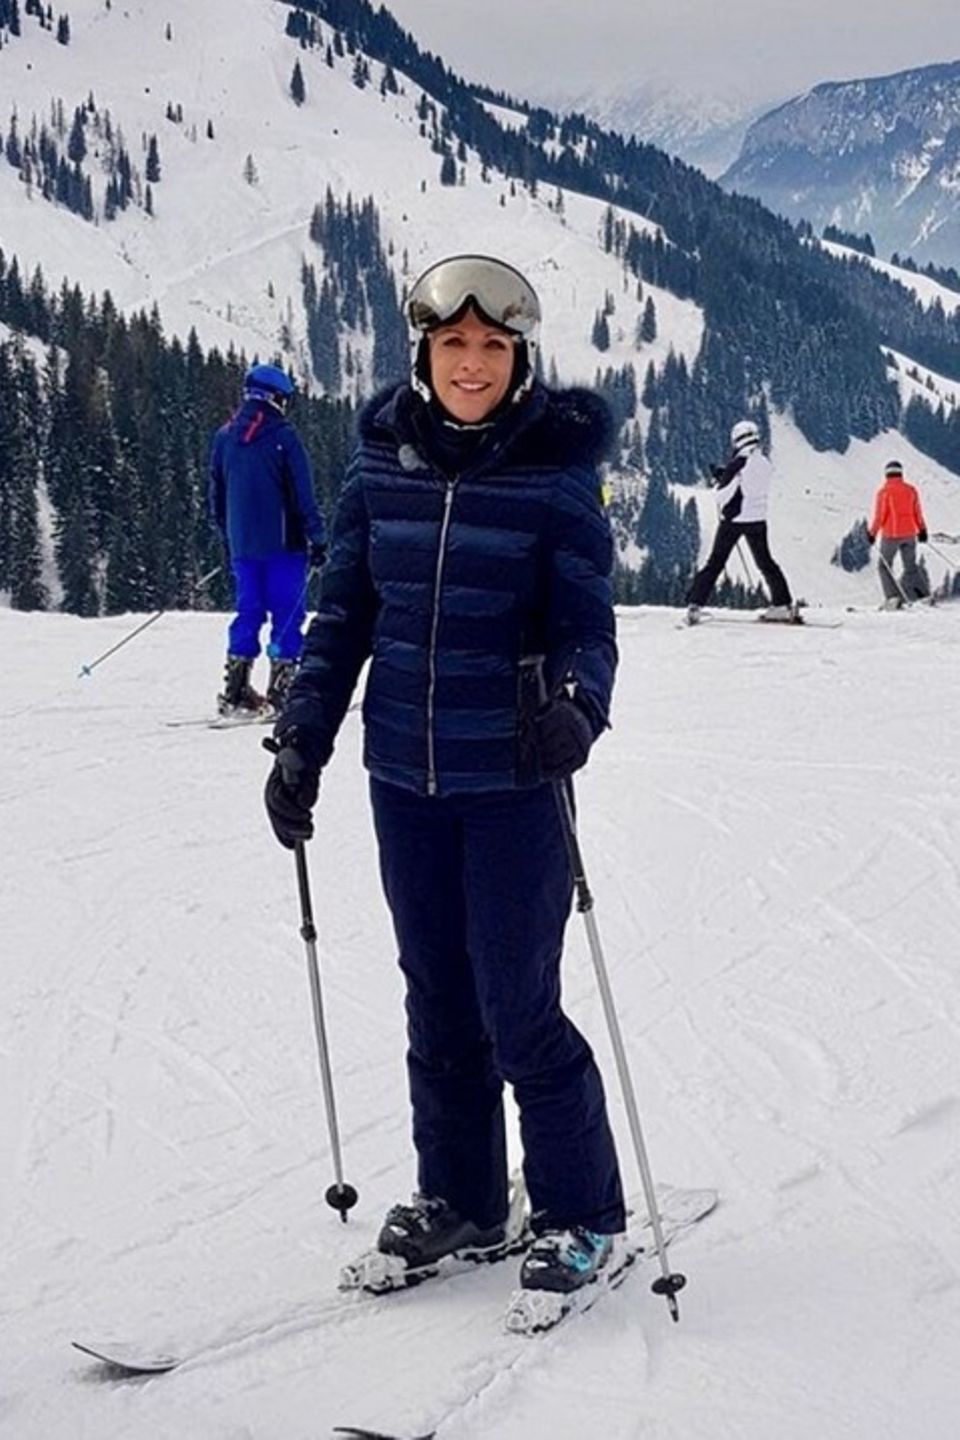 Birgit Schrowange sendet liebe Karnevalsgrüße aus dem verschneiten Österreich. Scherzend schreibt sie weiter: "Ich hab mich heute als Skifahrerin verkleidet." 